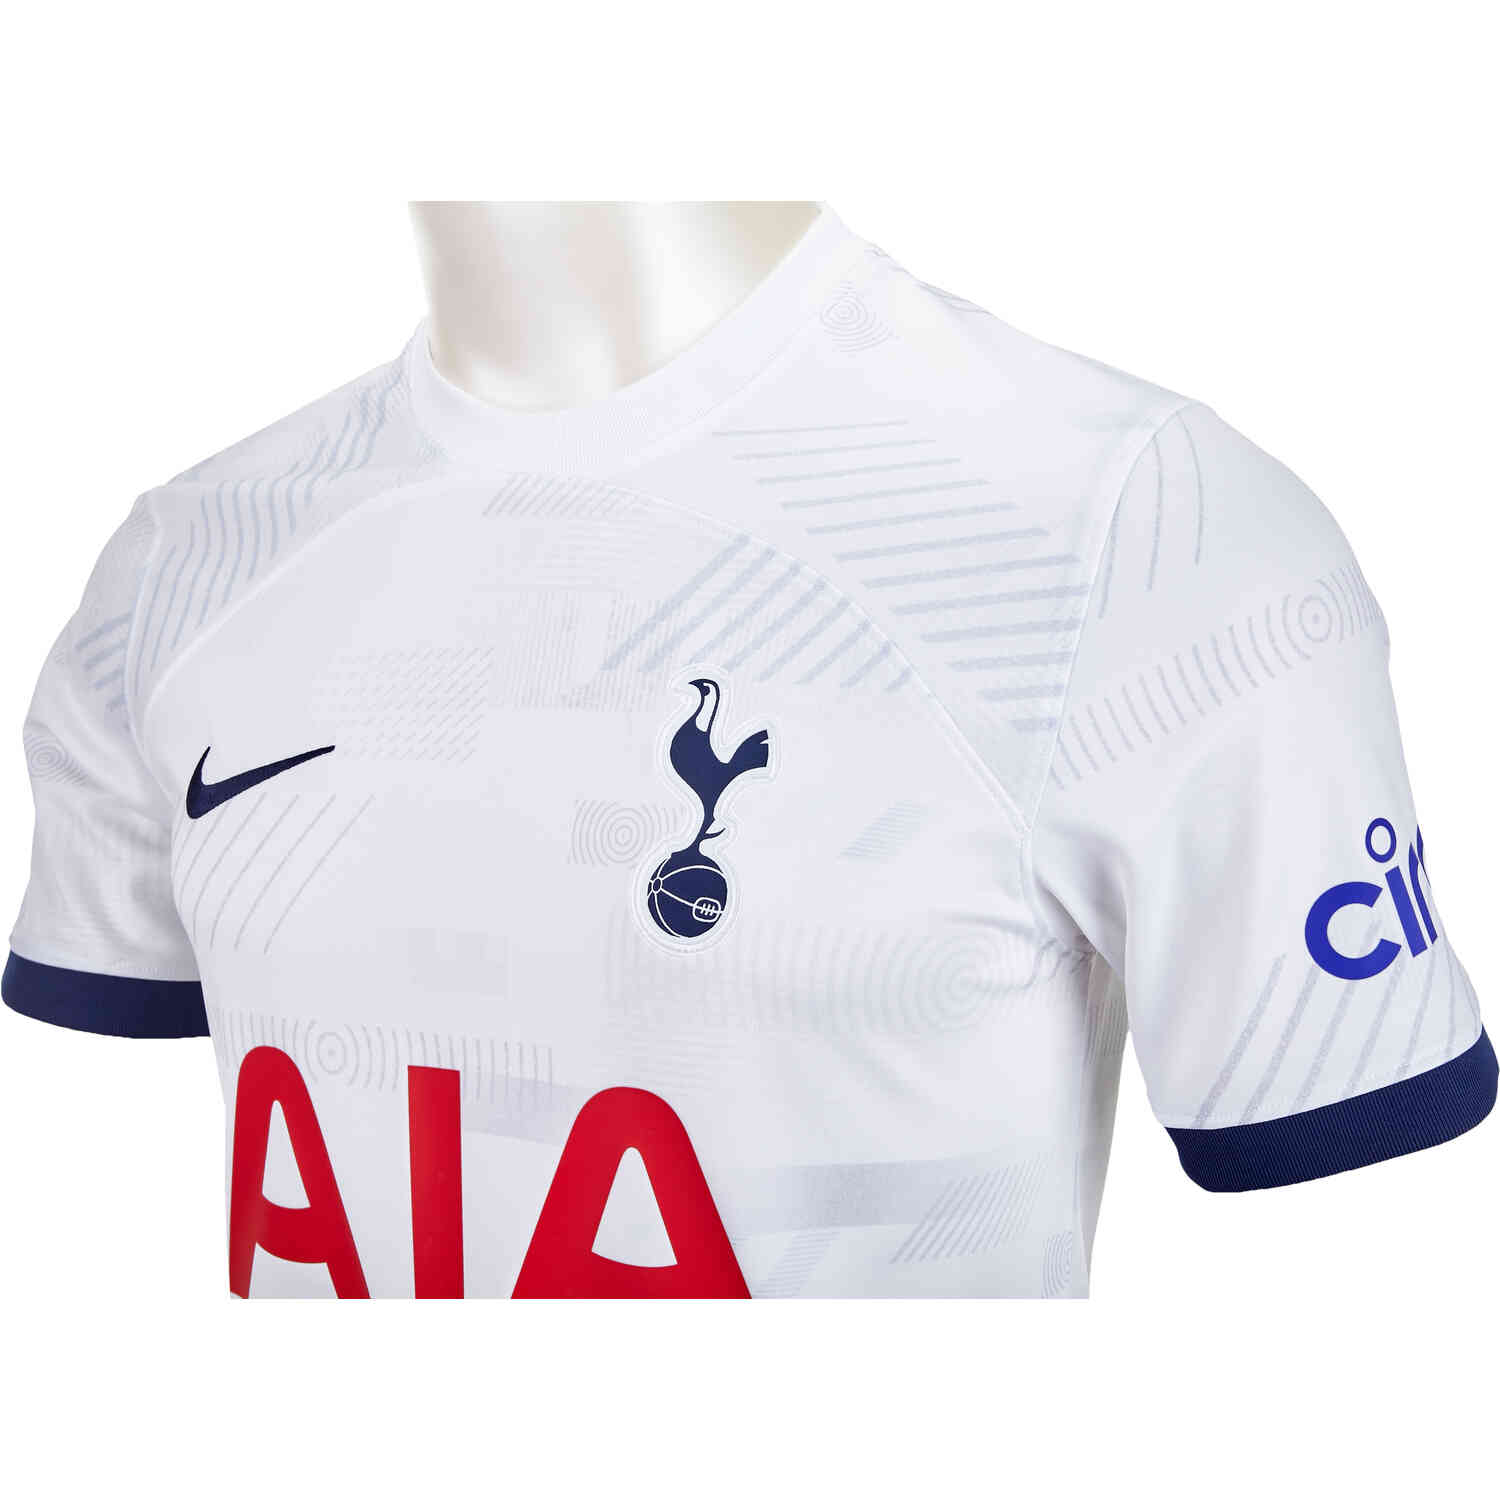 2018/19 Nike Tottenham 3rd Jersey - SoccerPro